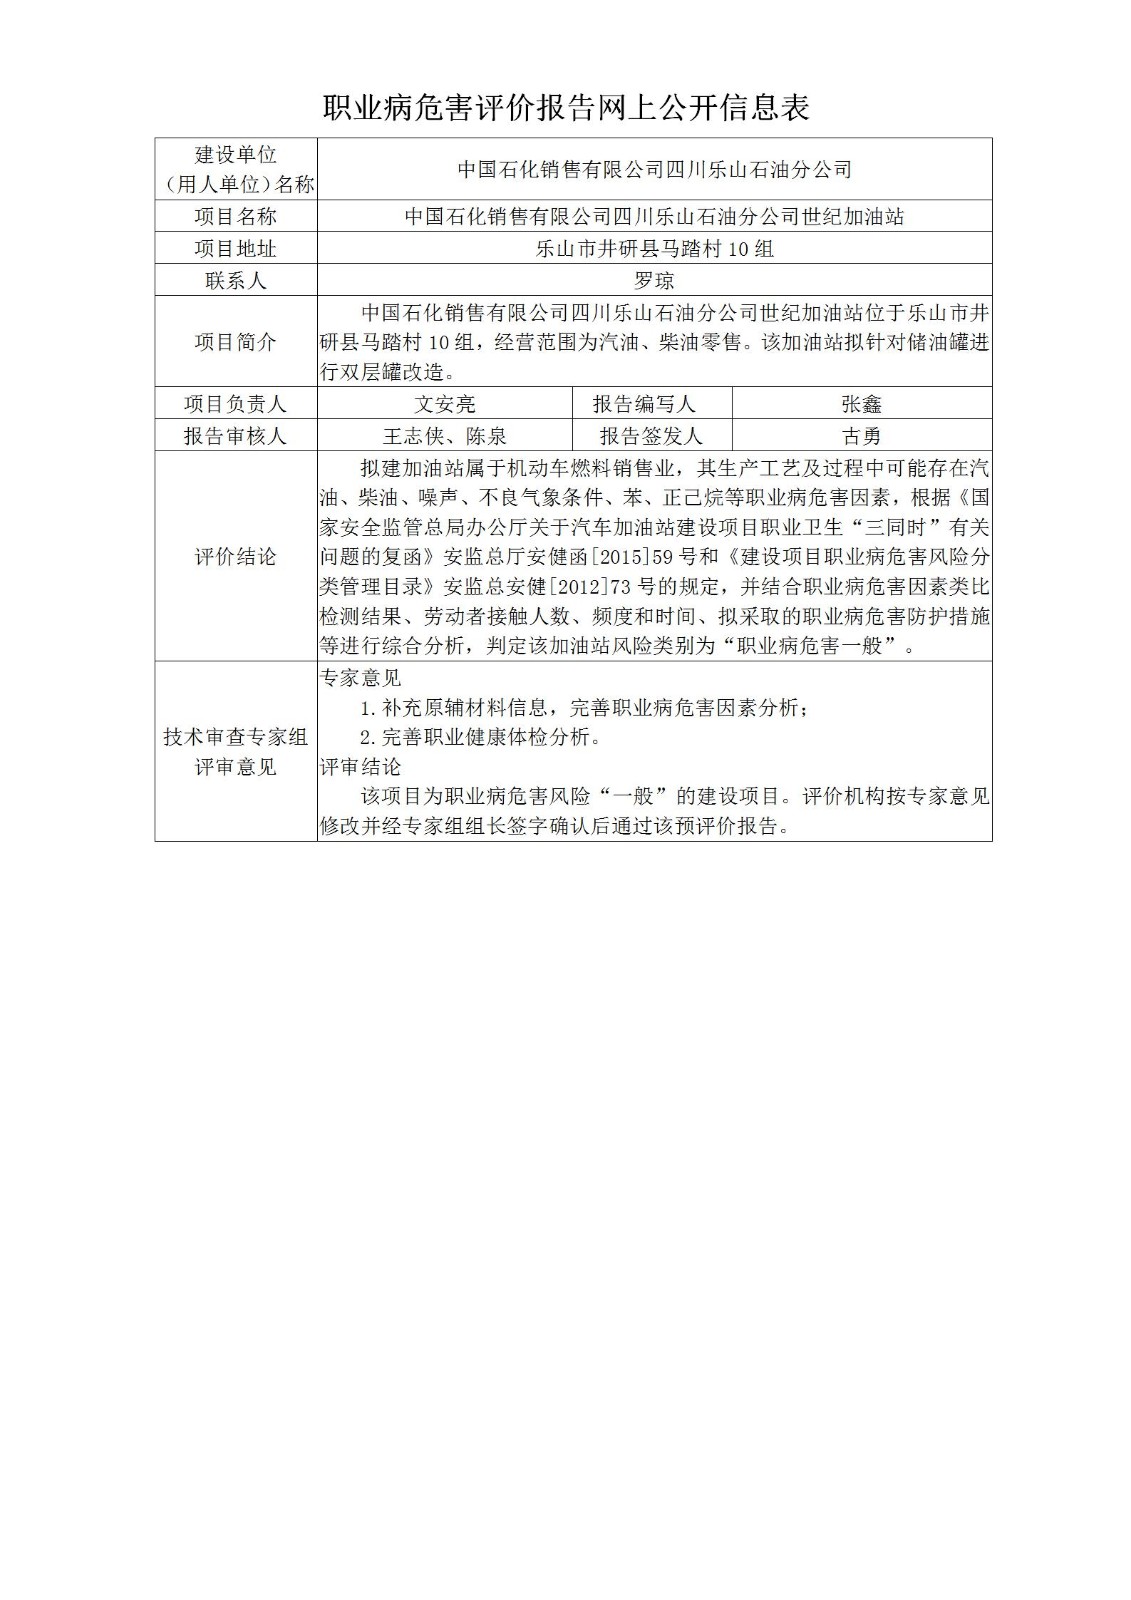 中国石化销售有限公司四川乐山石油分公司世纪加油站职业病危害预评价